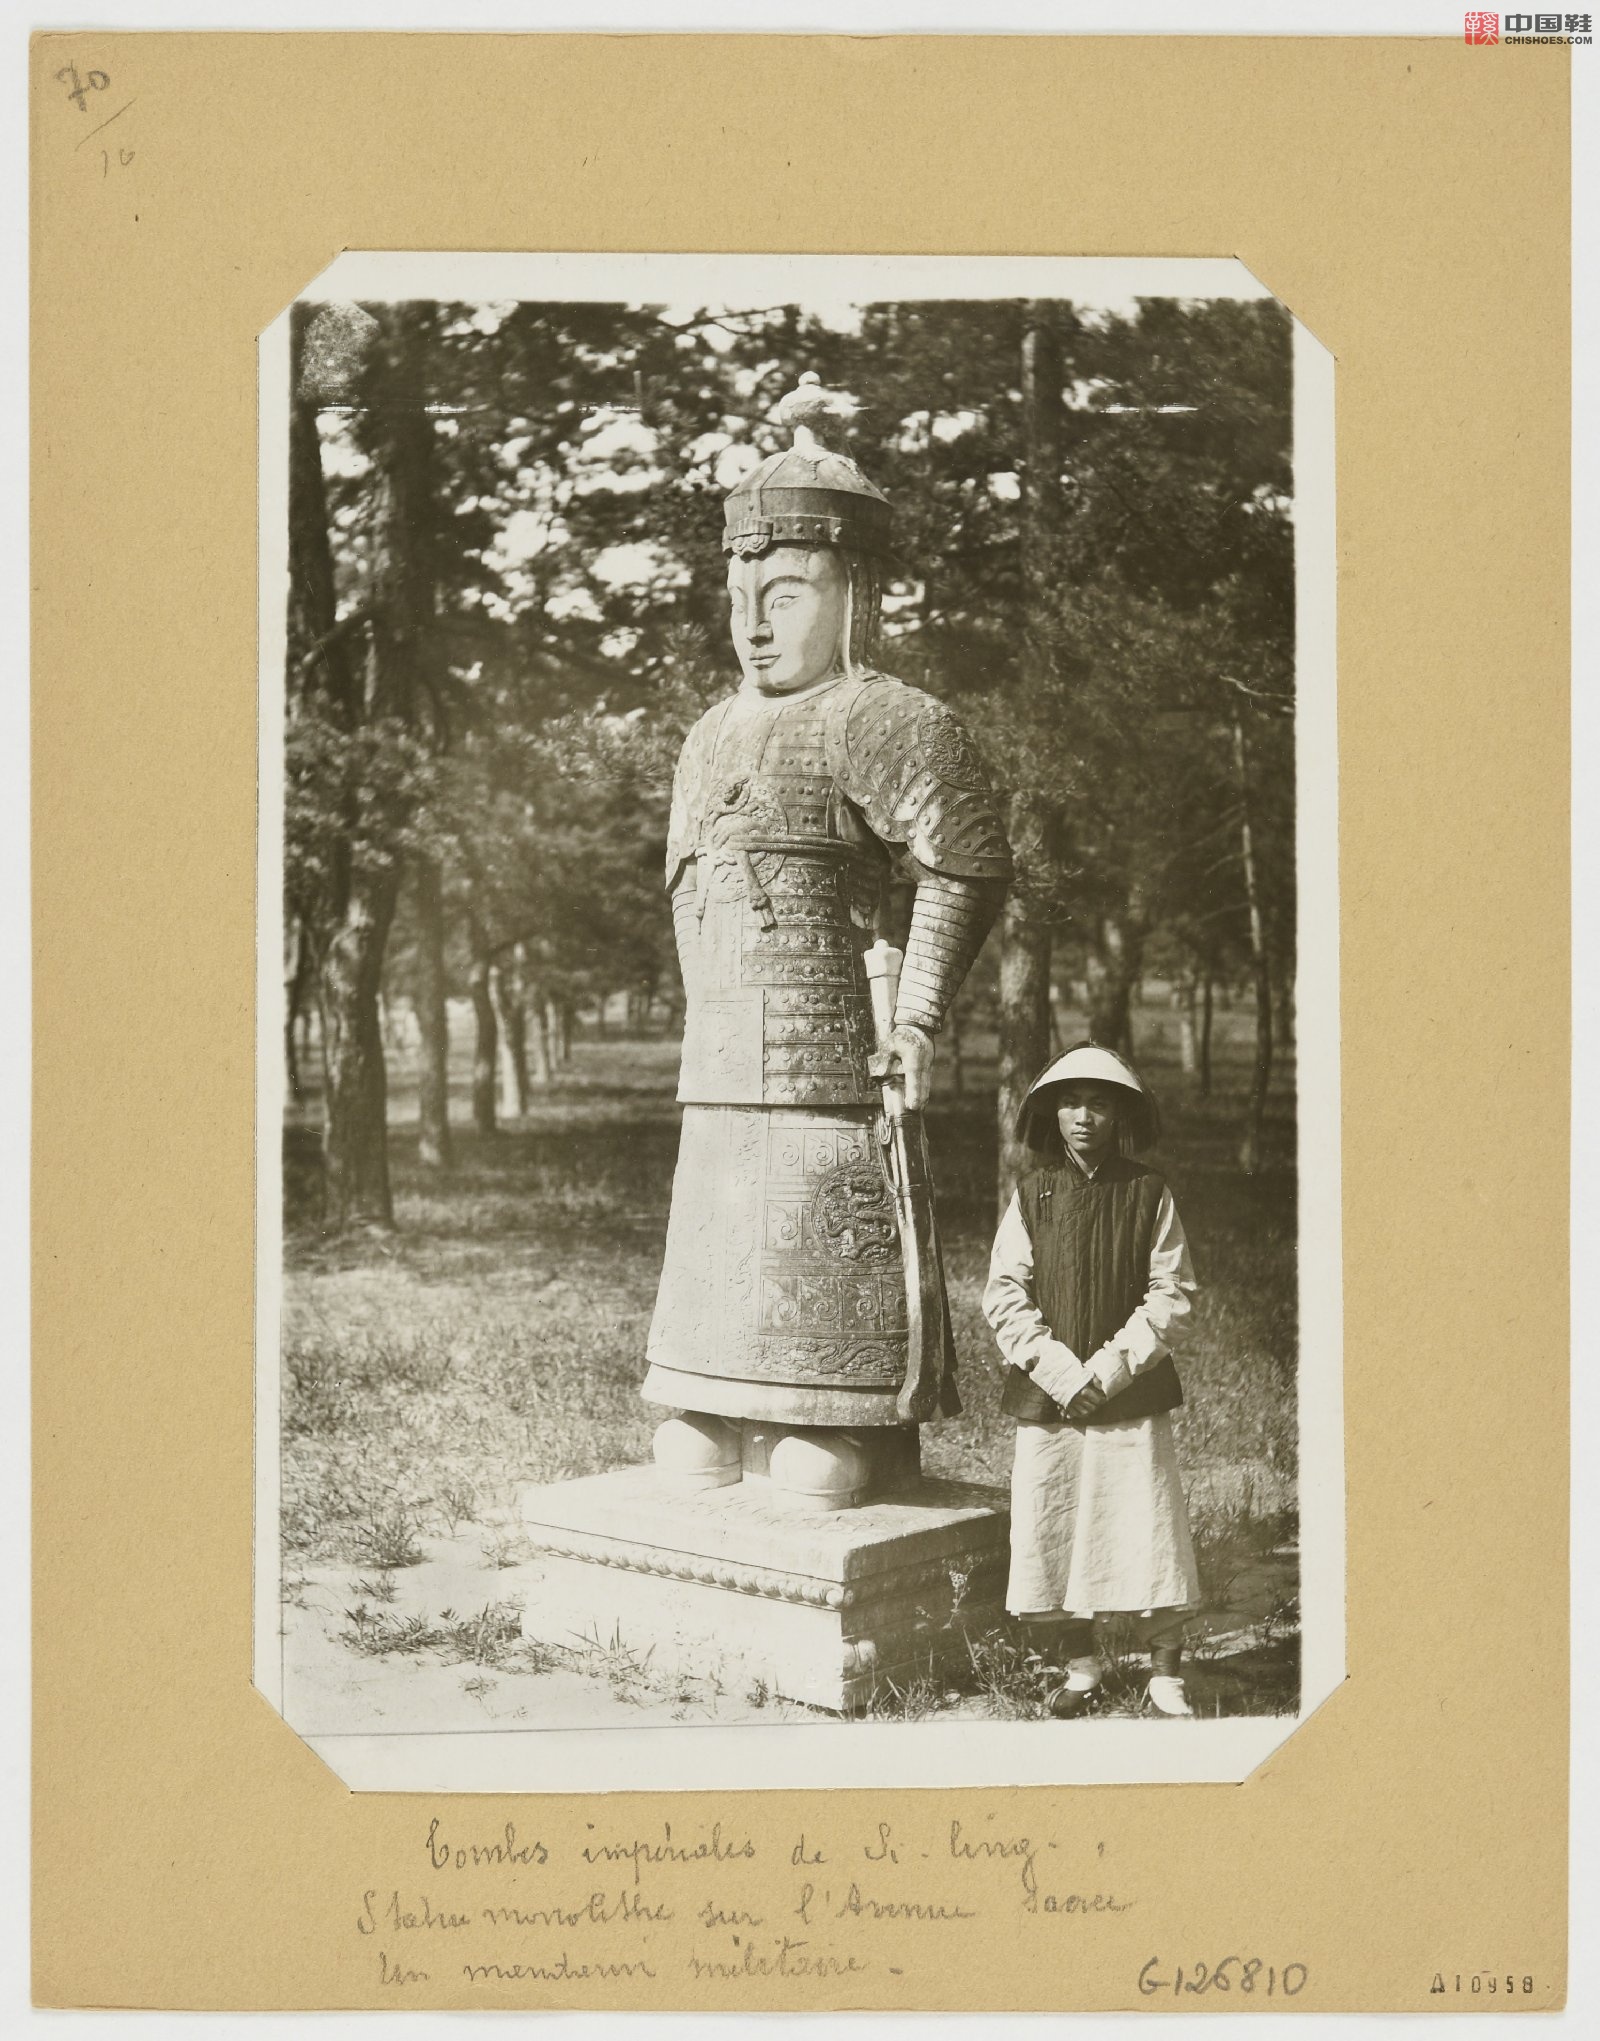 拉里贝的中国影像记录.415幅.By Firmin Laribe.1900-1910年_Page_284.jpg